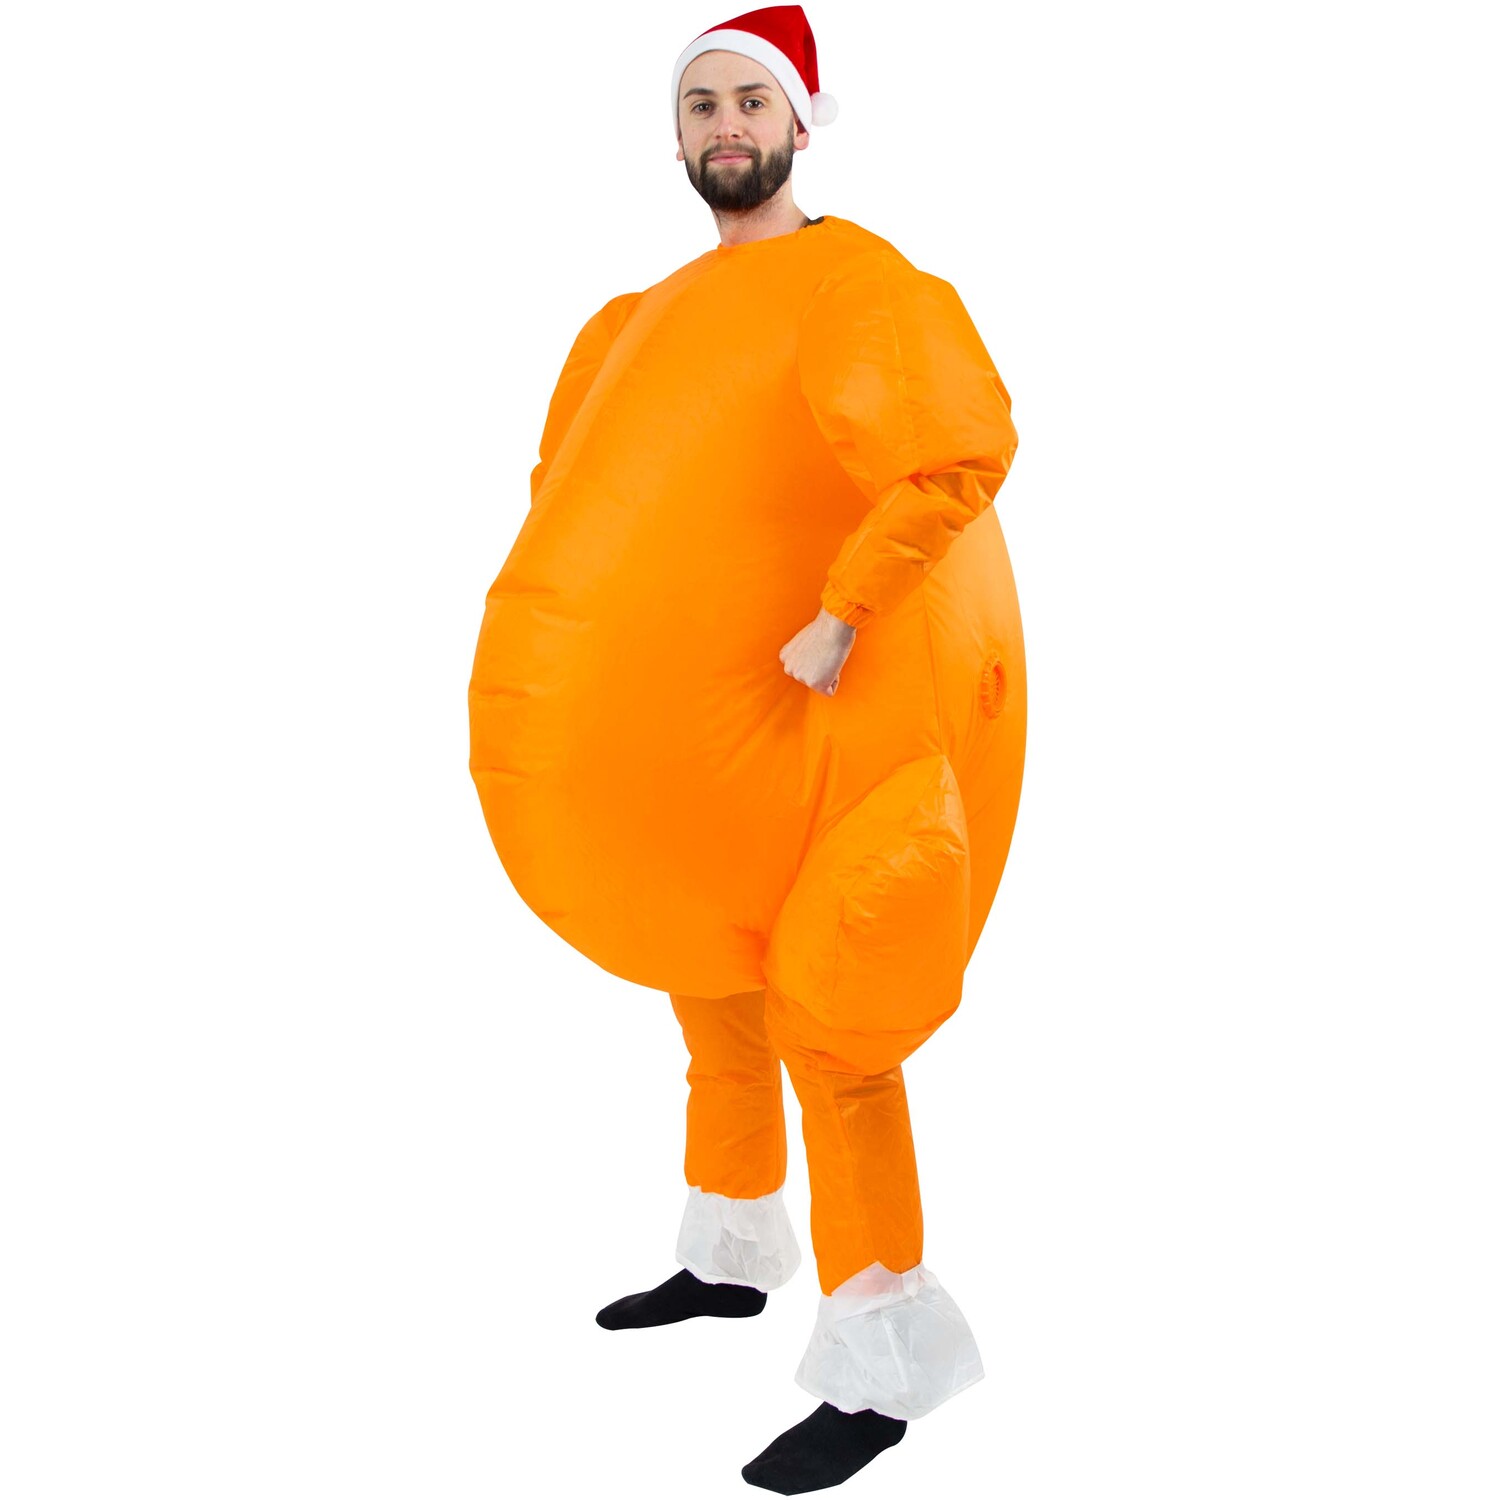 Roasted Turkey Inflatable Costume Image 4